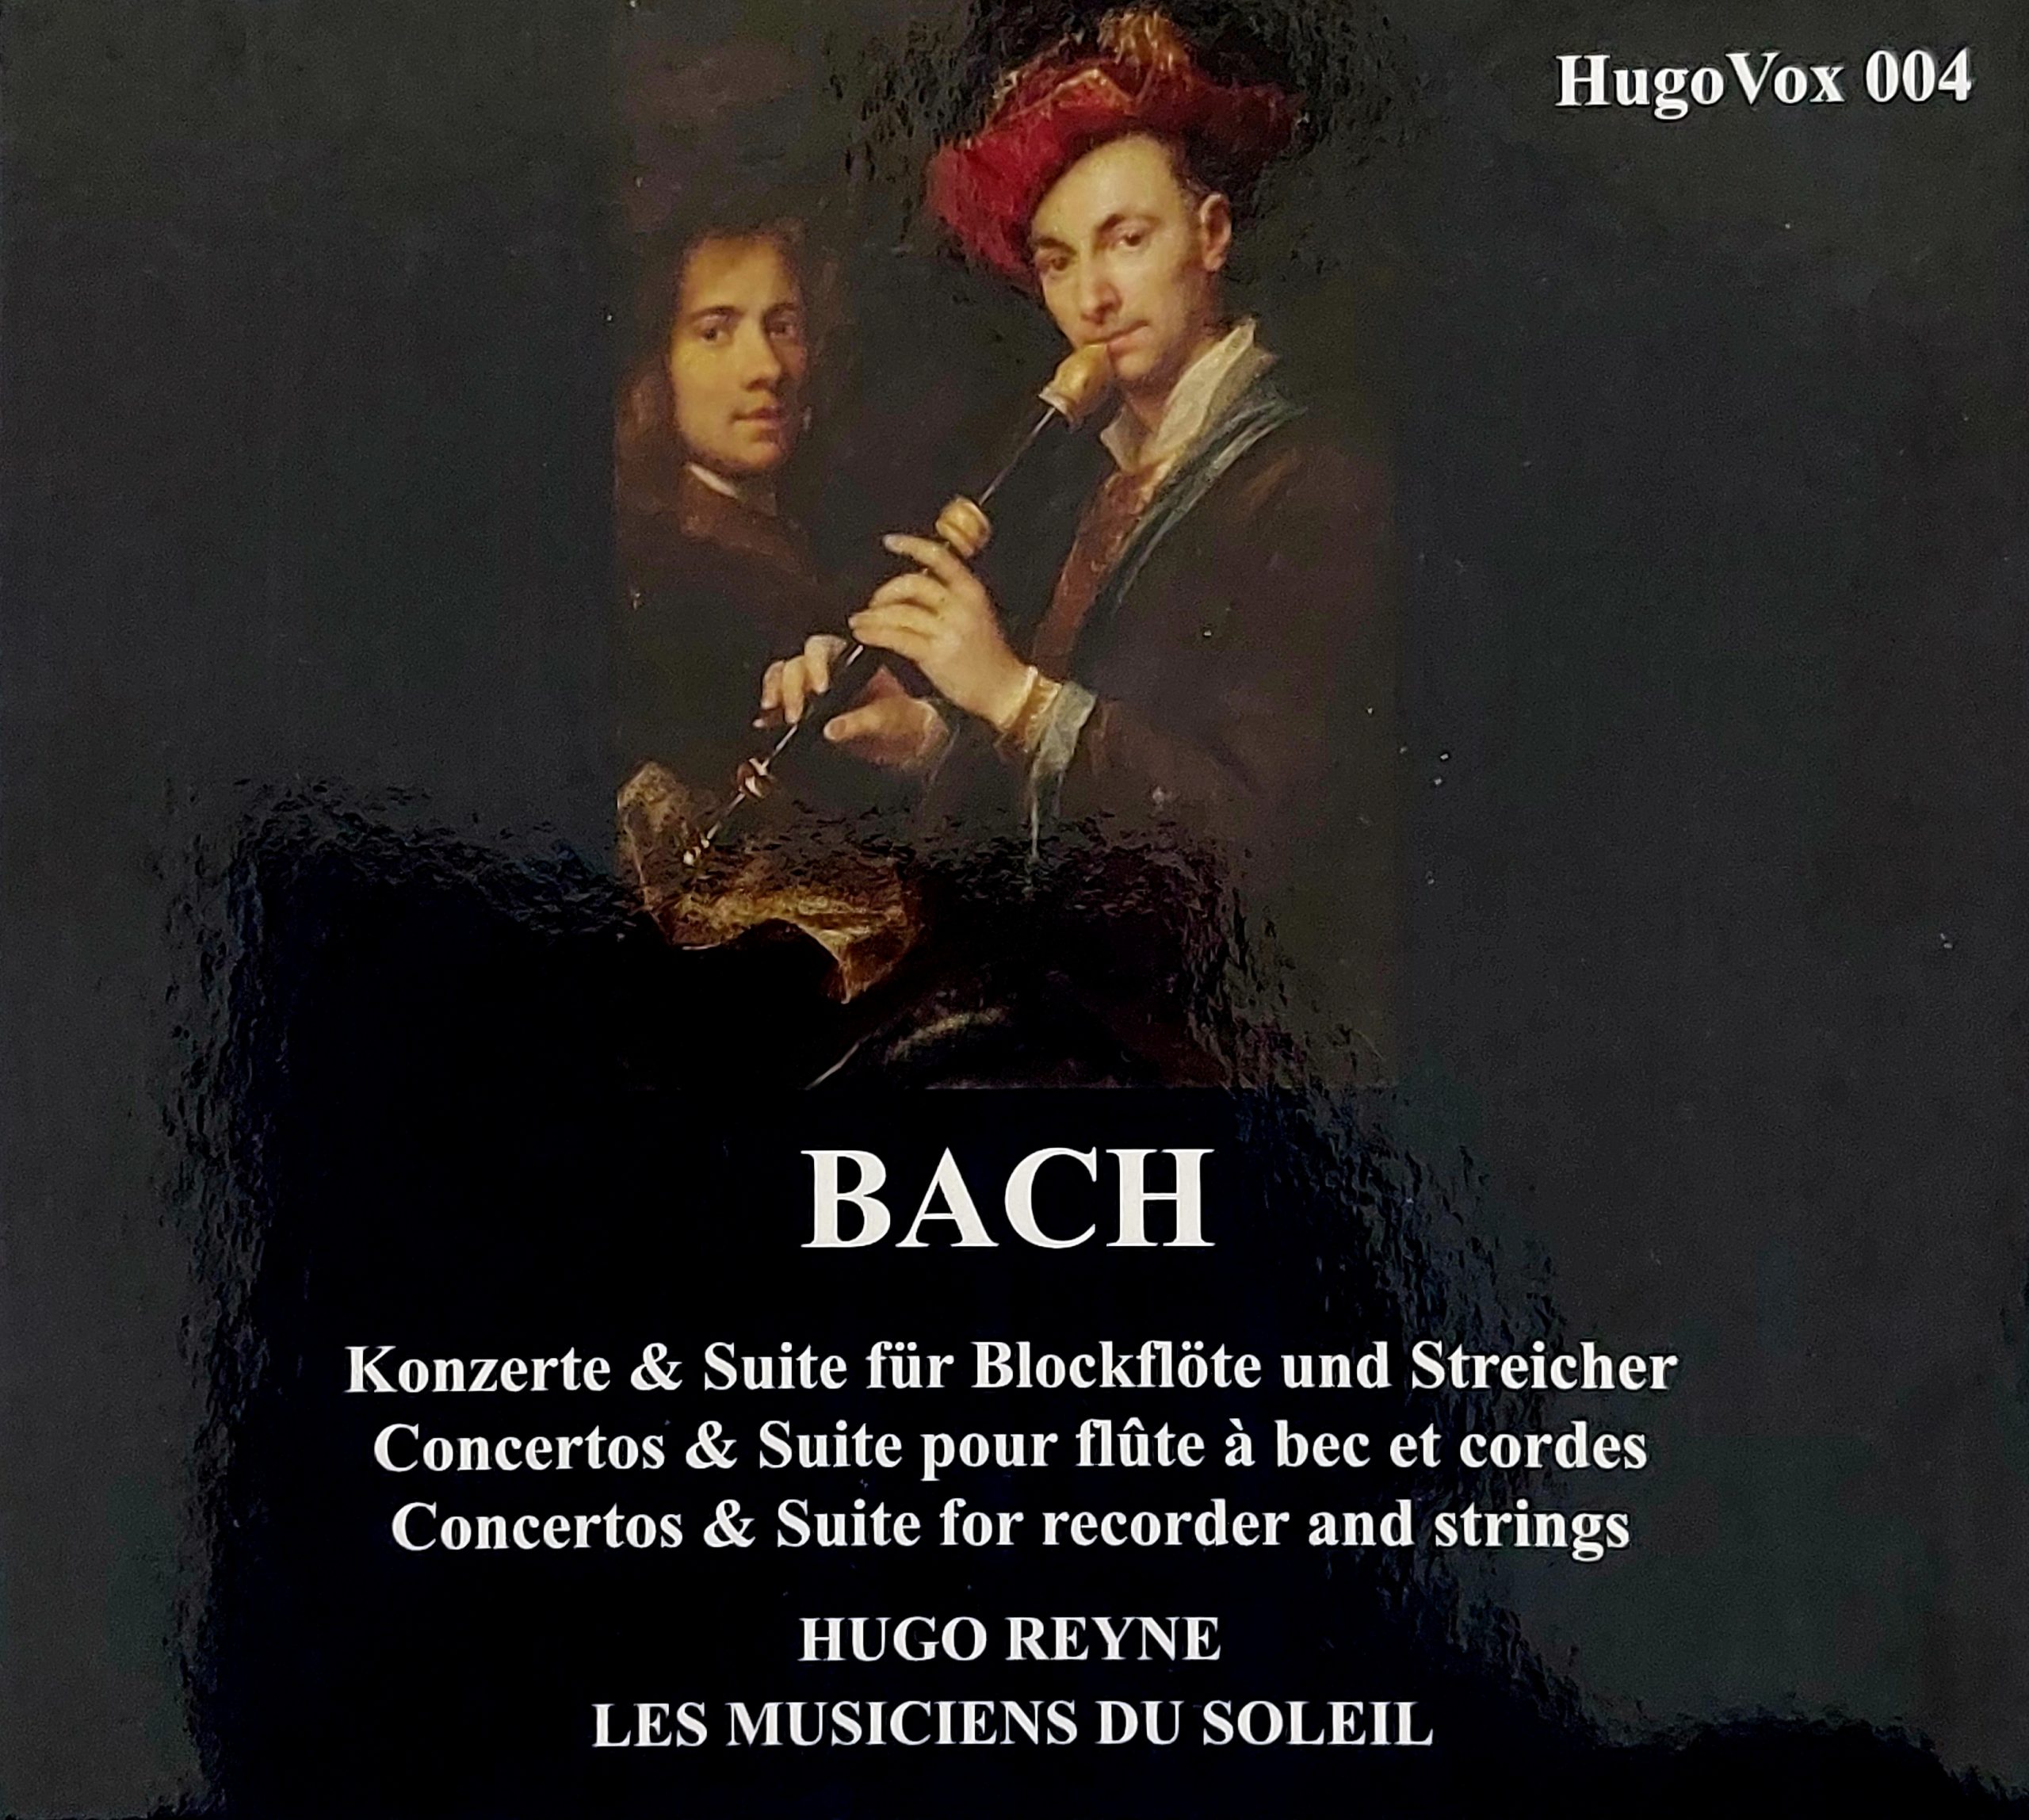 Comme un oiseau (Bach, Concertos et Suite pour flûte, Hugo Reyne, Les Musiciens du Soleil – Hugo Vox)